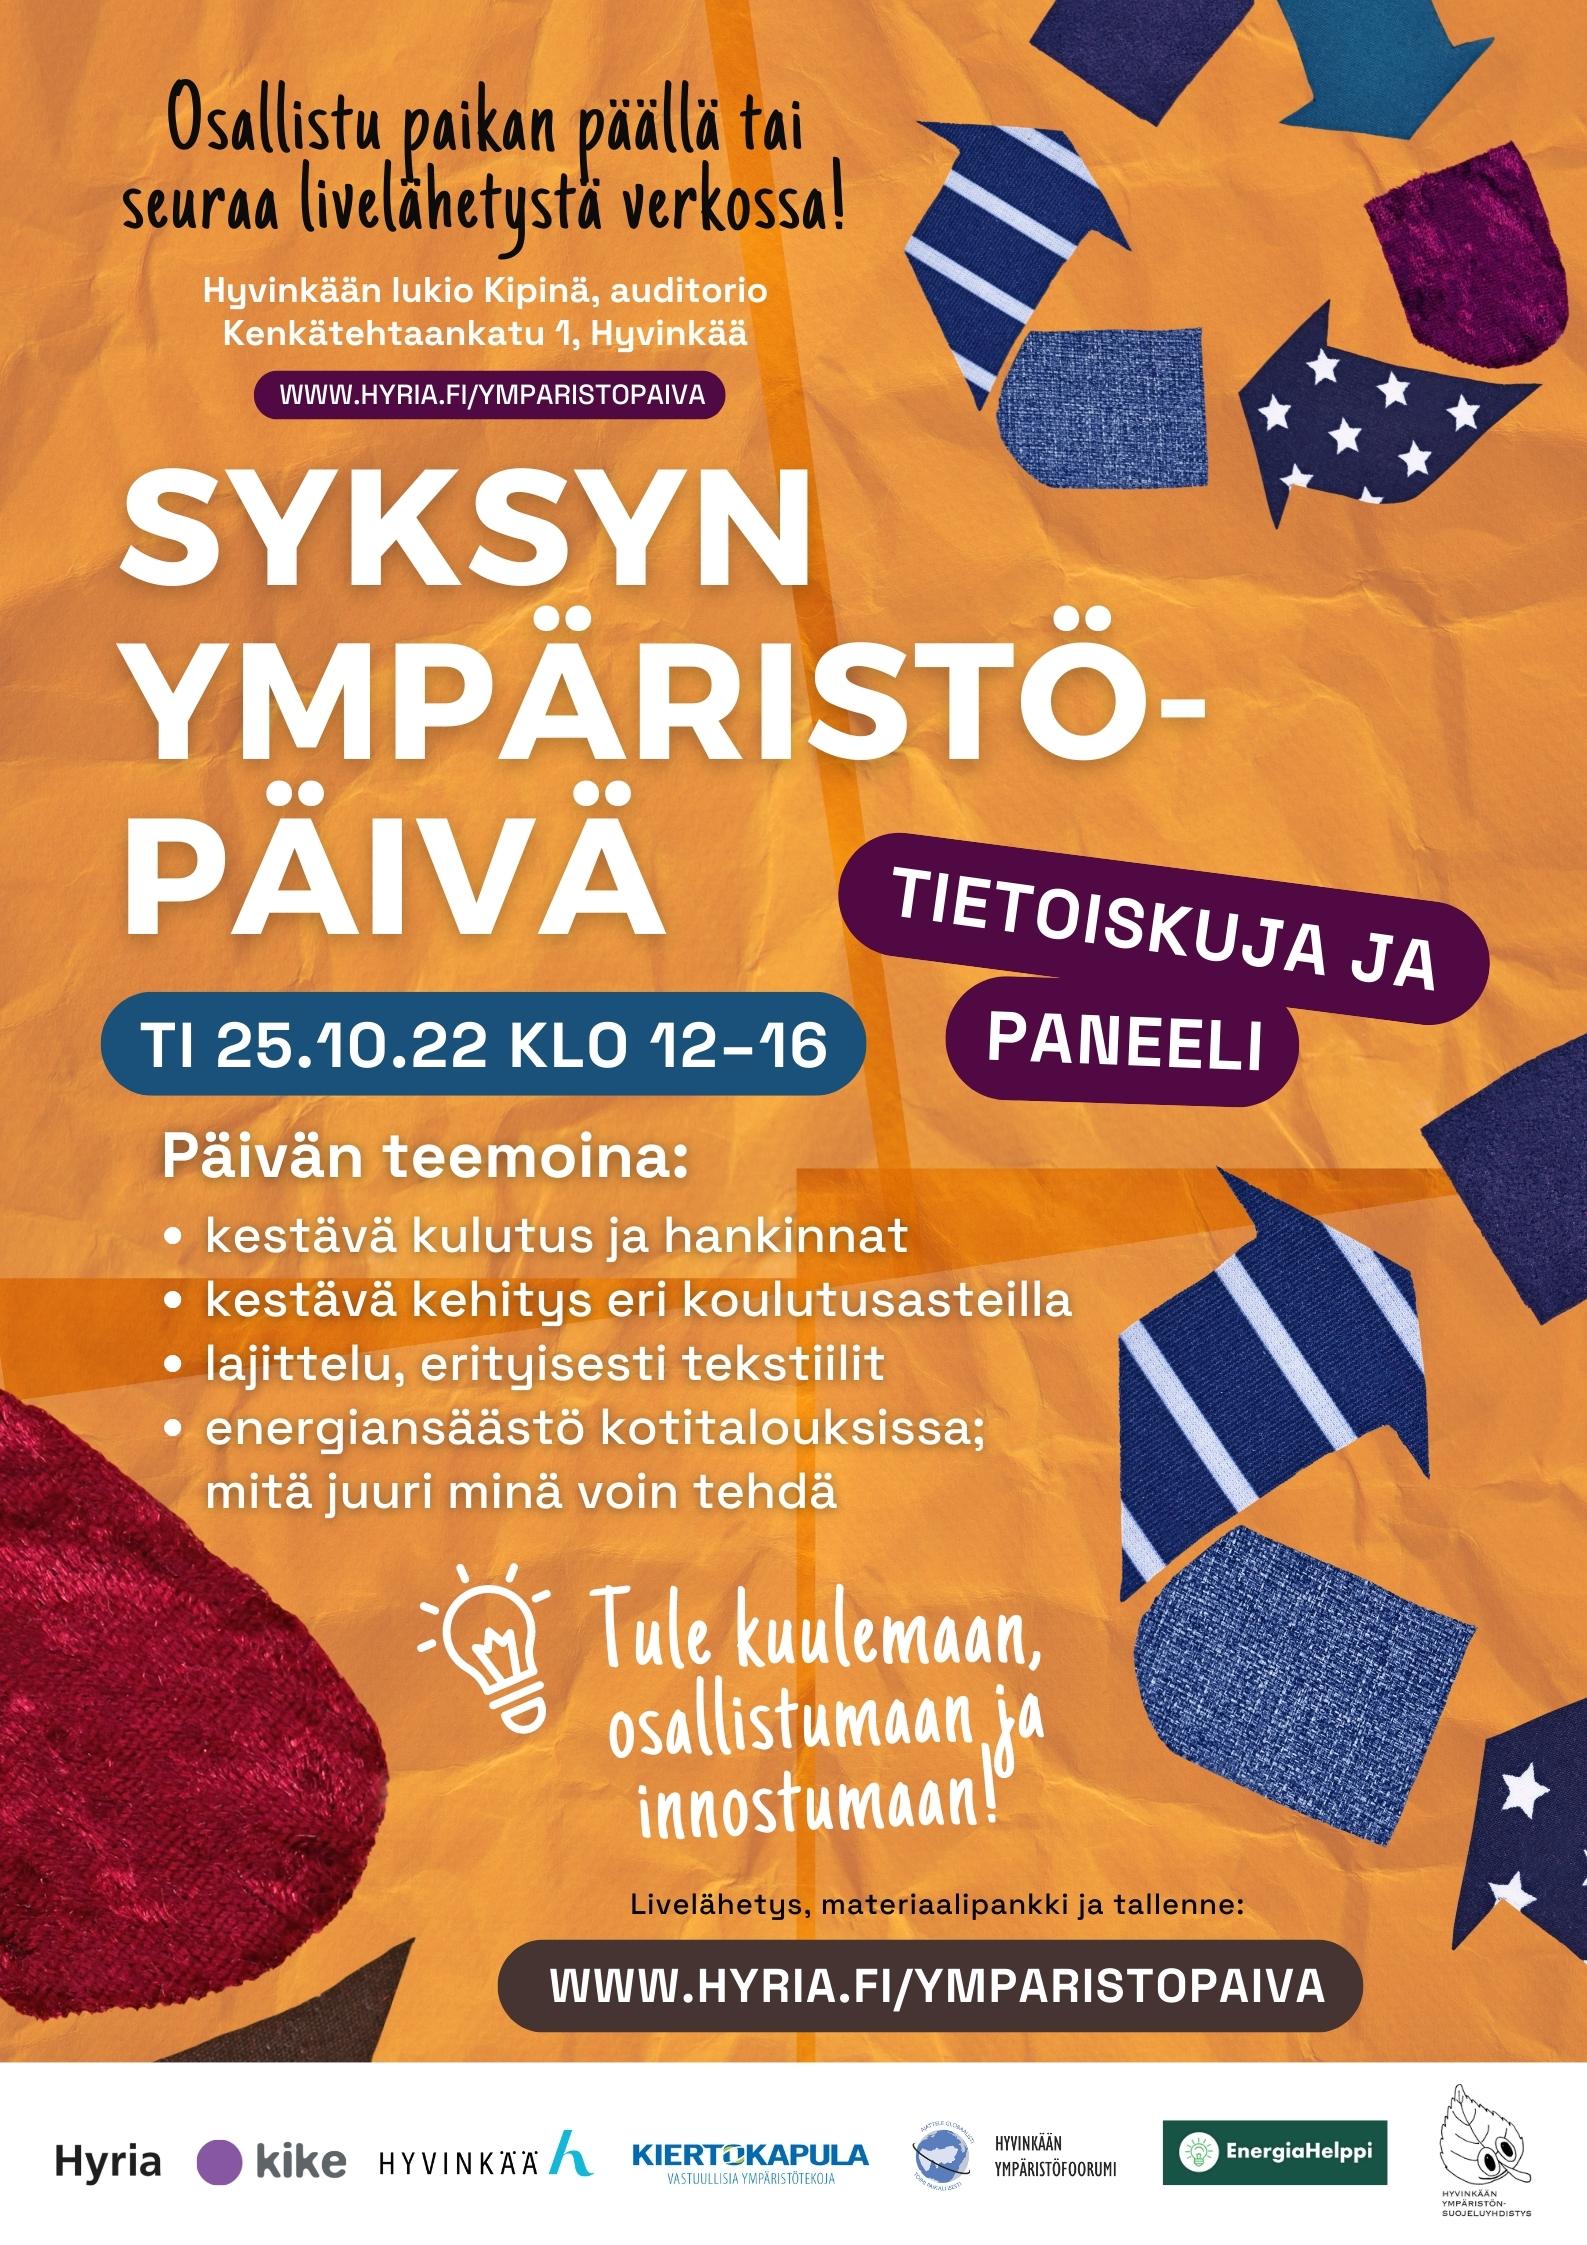 Syksyn ympäristöpäivä järjestetään 25.10. klo 12-16 Kipinä-talossa Hyvinkäällä.